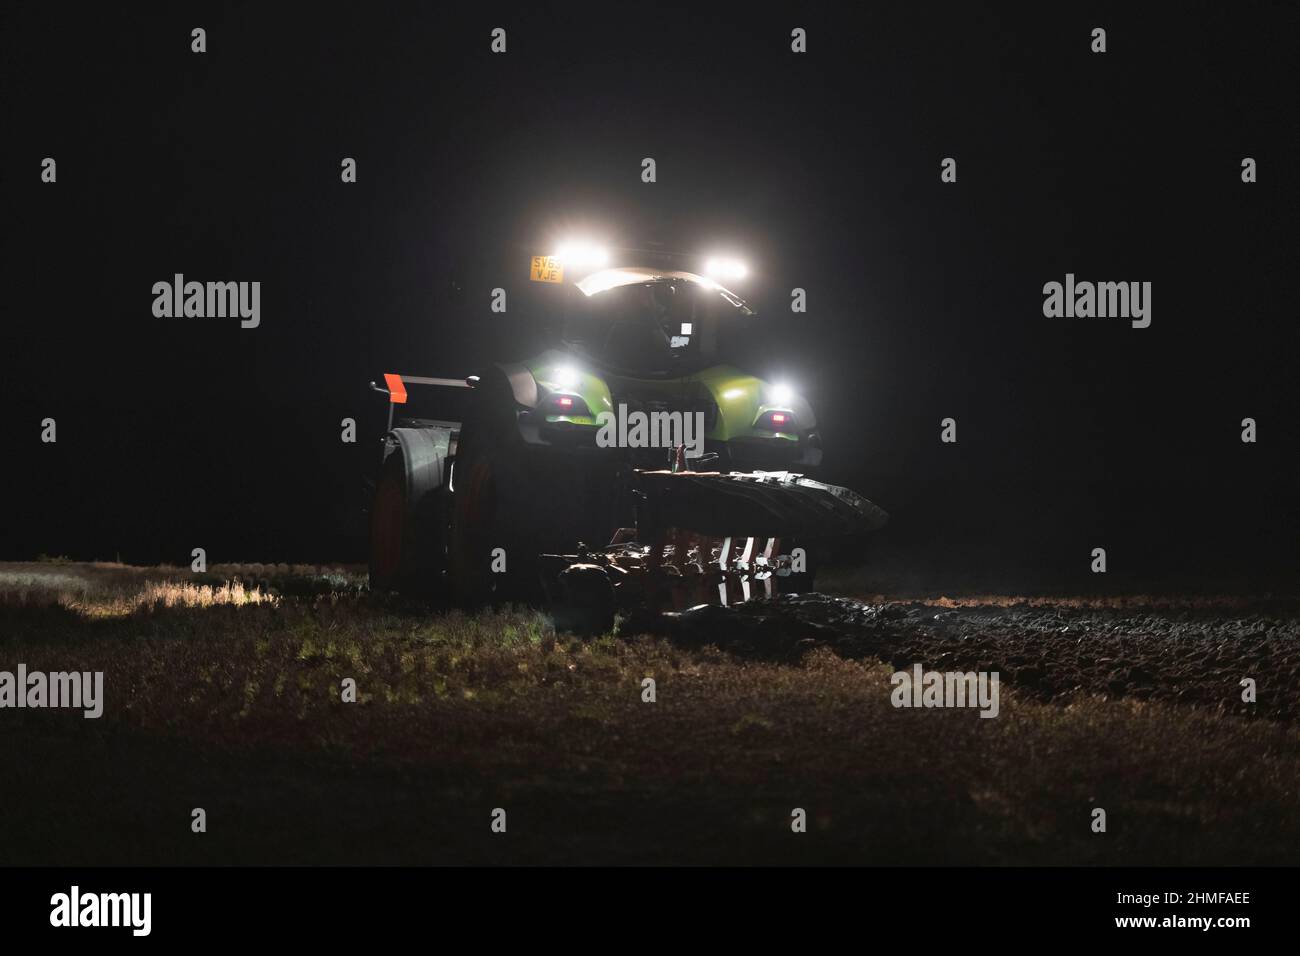 Mit dem neuen Jahr Lichter von einem Traktor auf einer Straße im Winter,  Technik, Beleuchtung, feierlichen VASALEMMA, BELARUS - 03.01.19  eingerichtet Stockfotografie - Alamy